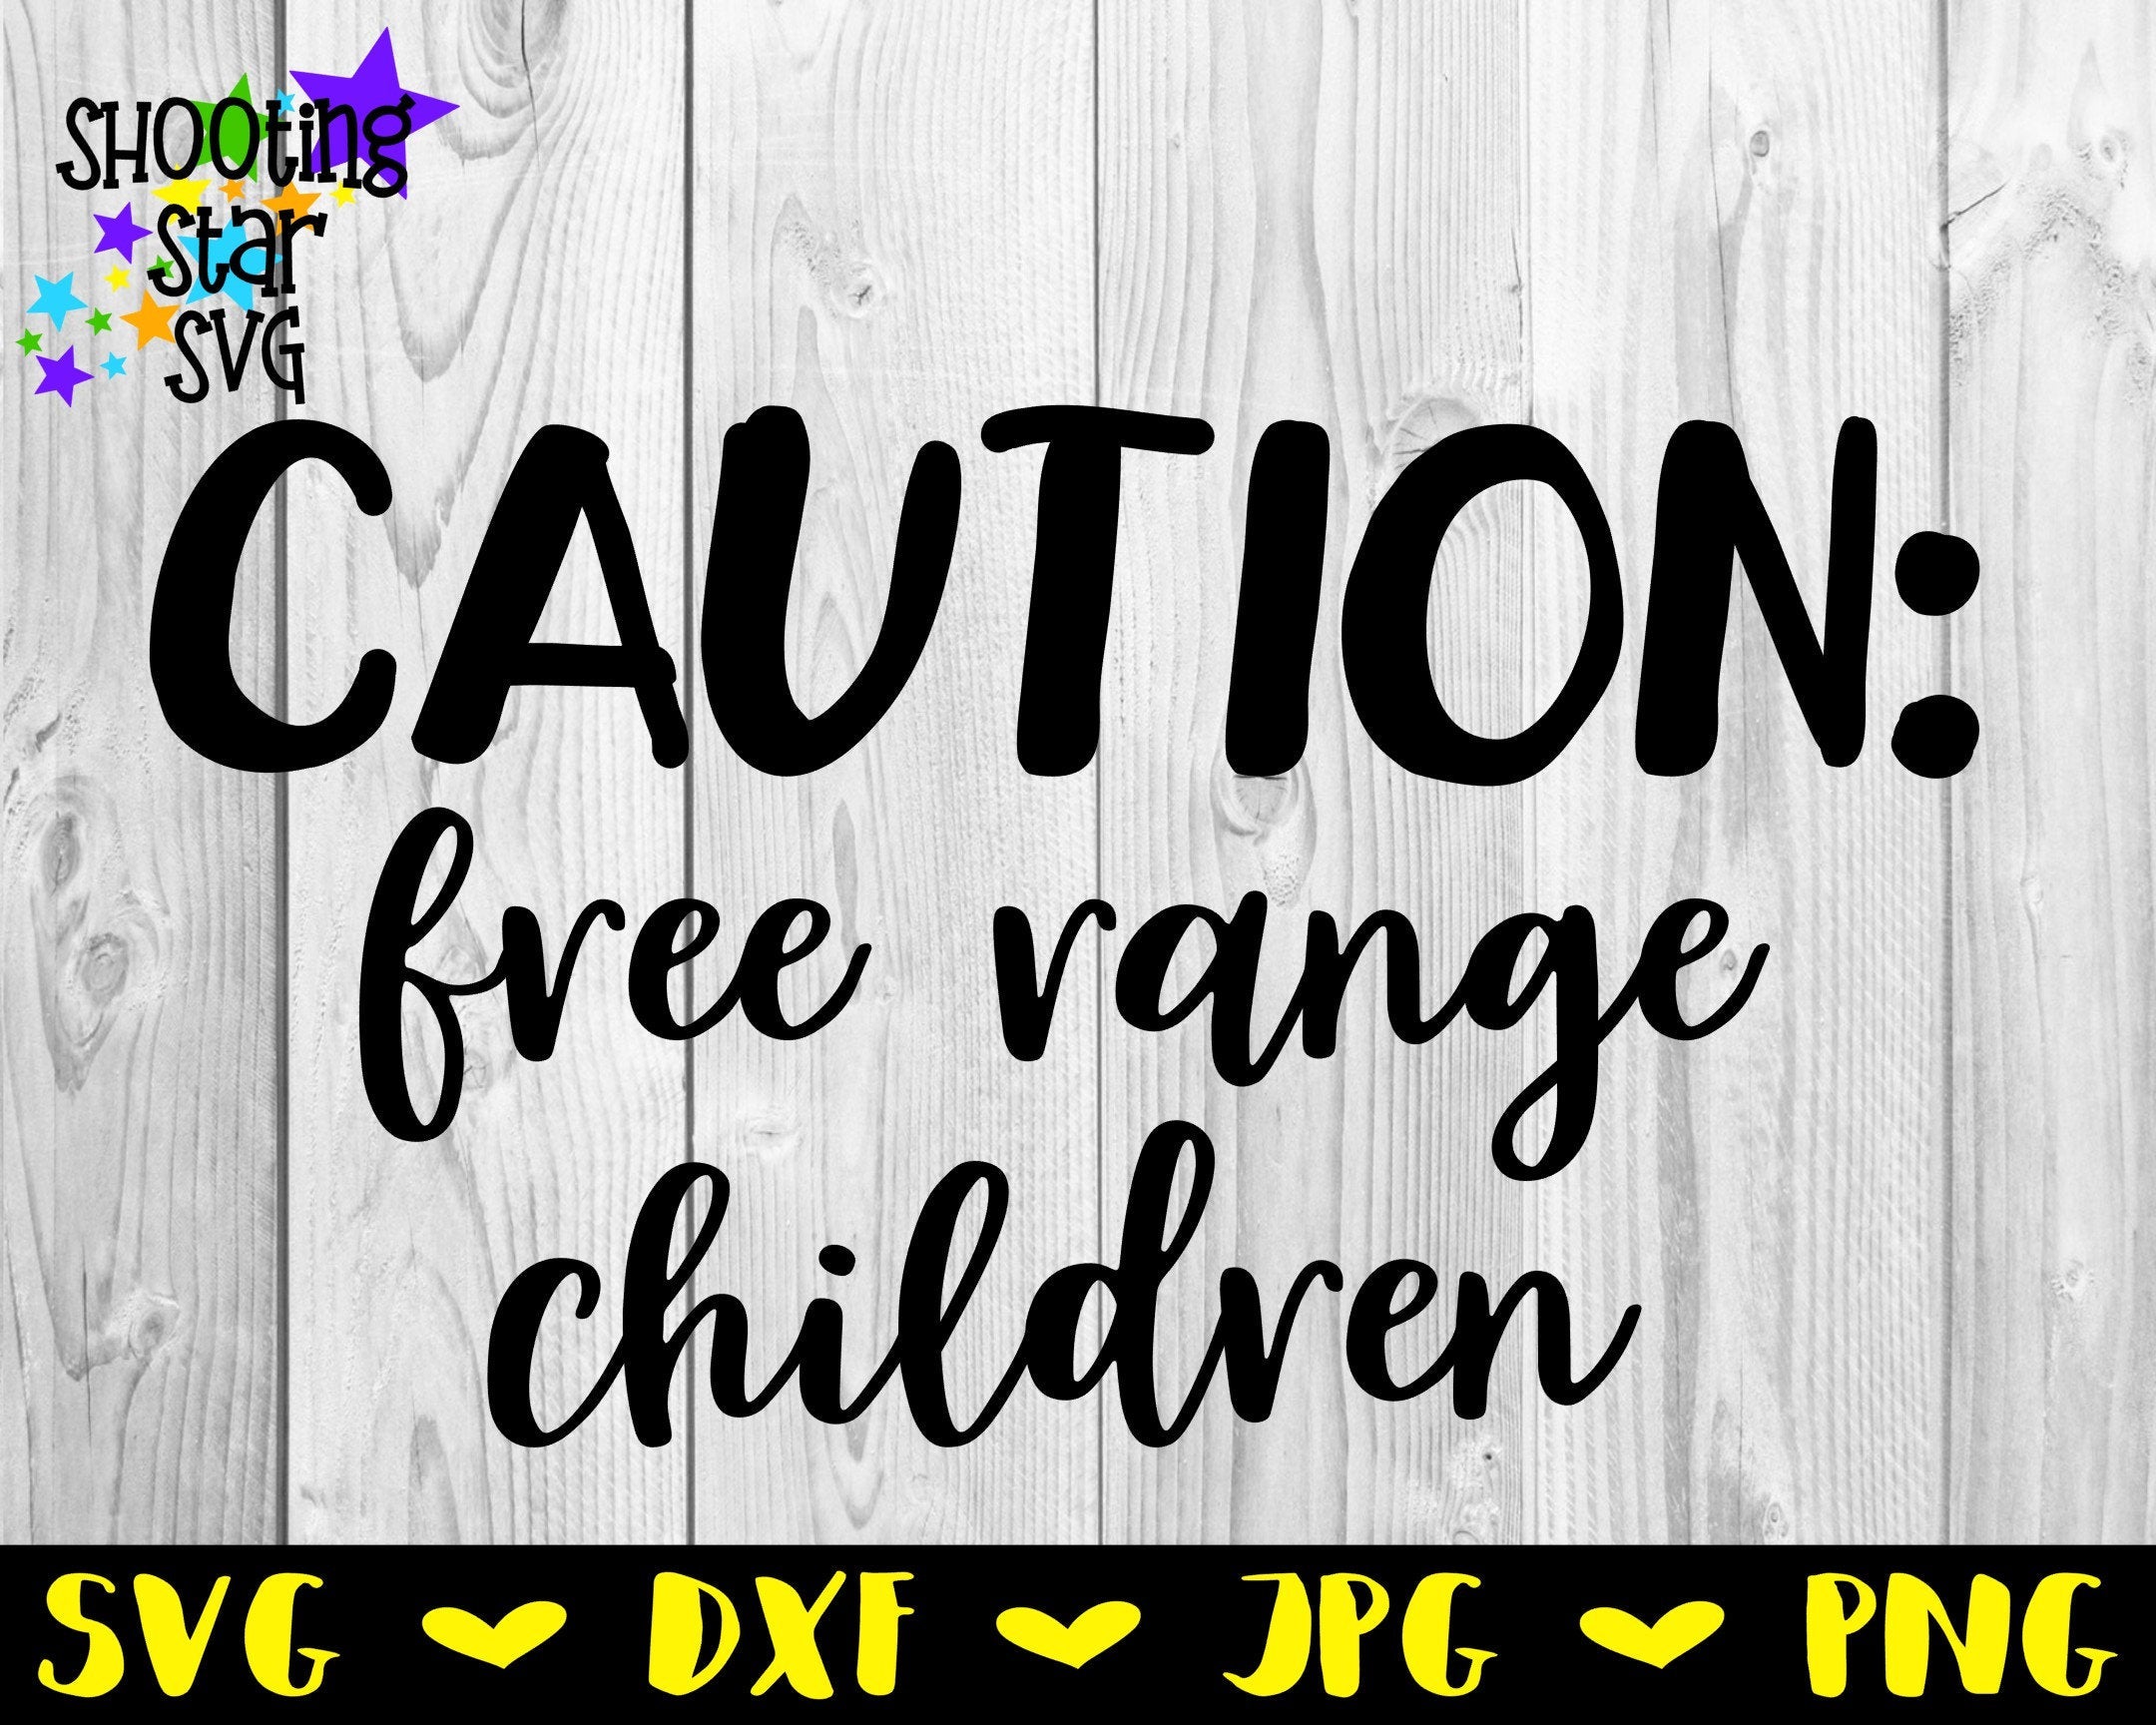 Caution free range children SVG - Doormat SVG